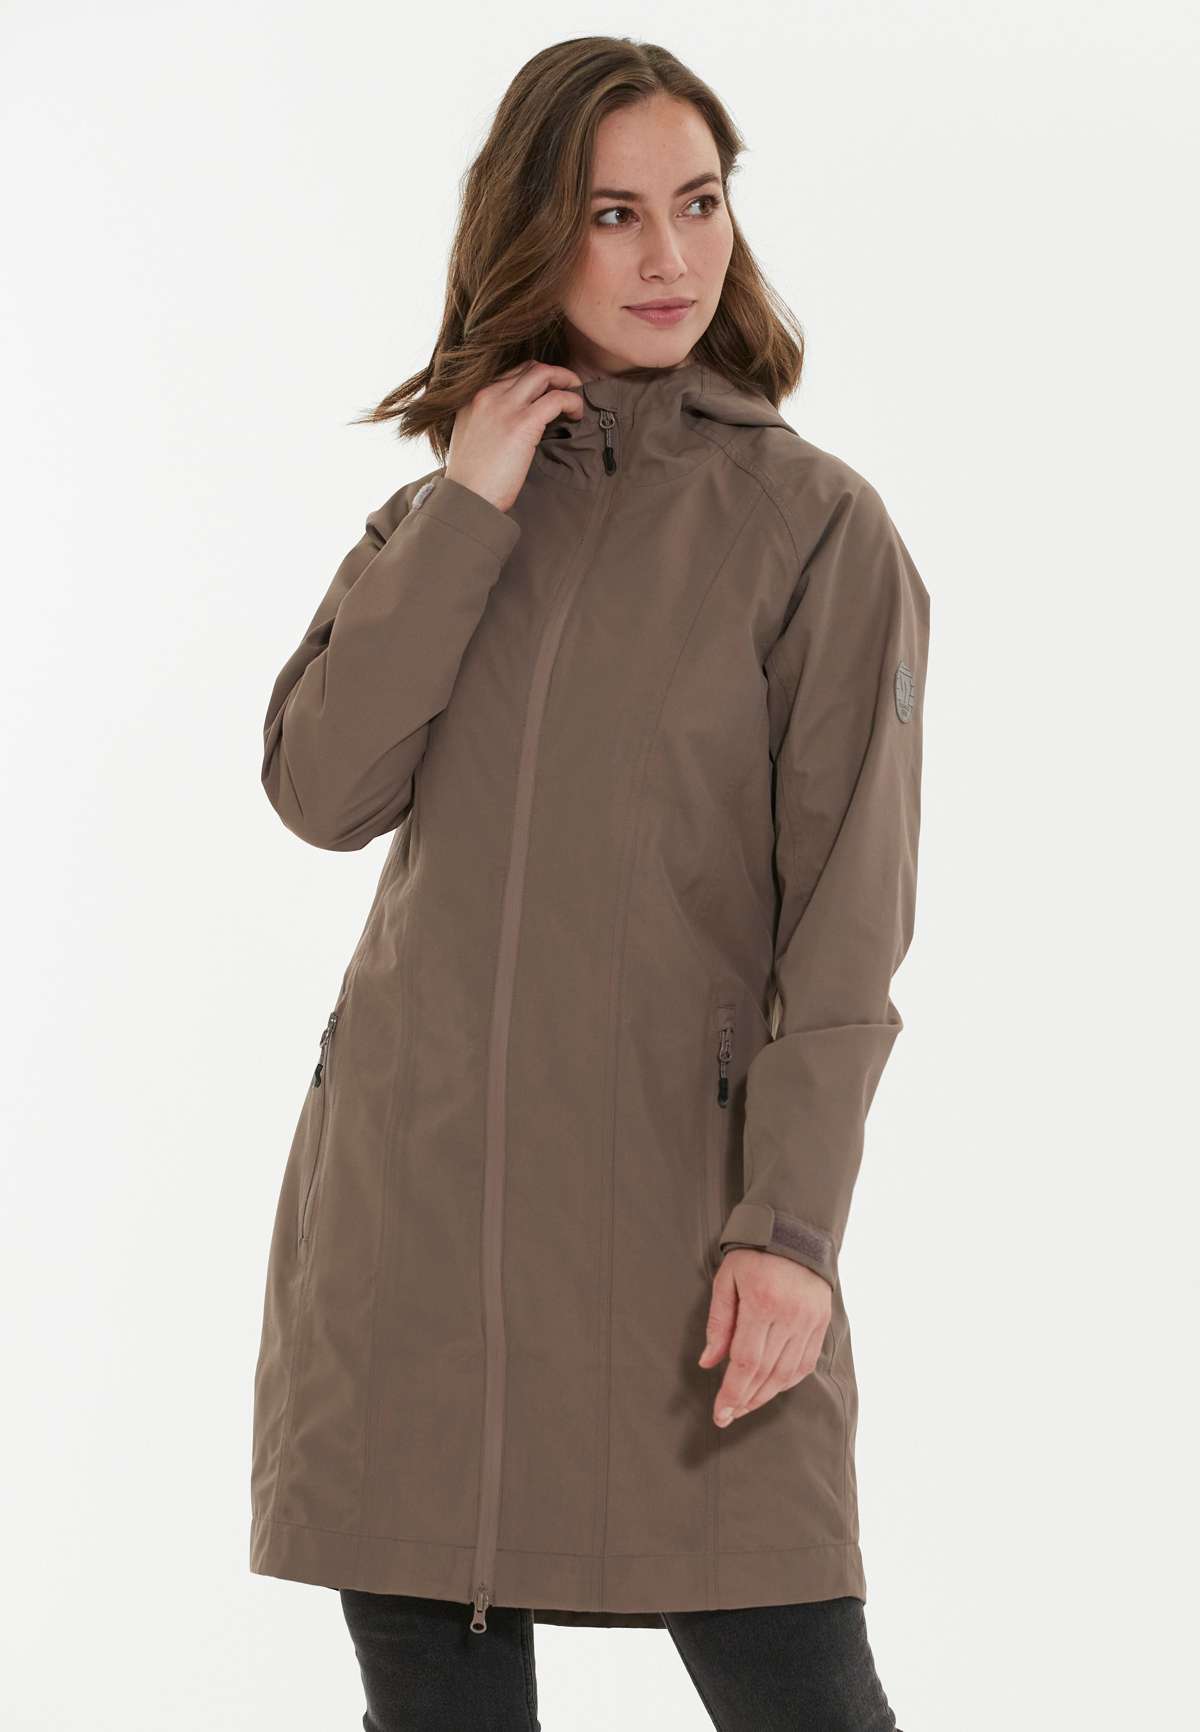 Куртка Softshell с водоотталкивающей полиуретановой мембраной.